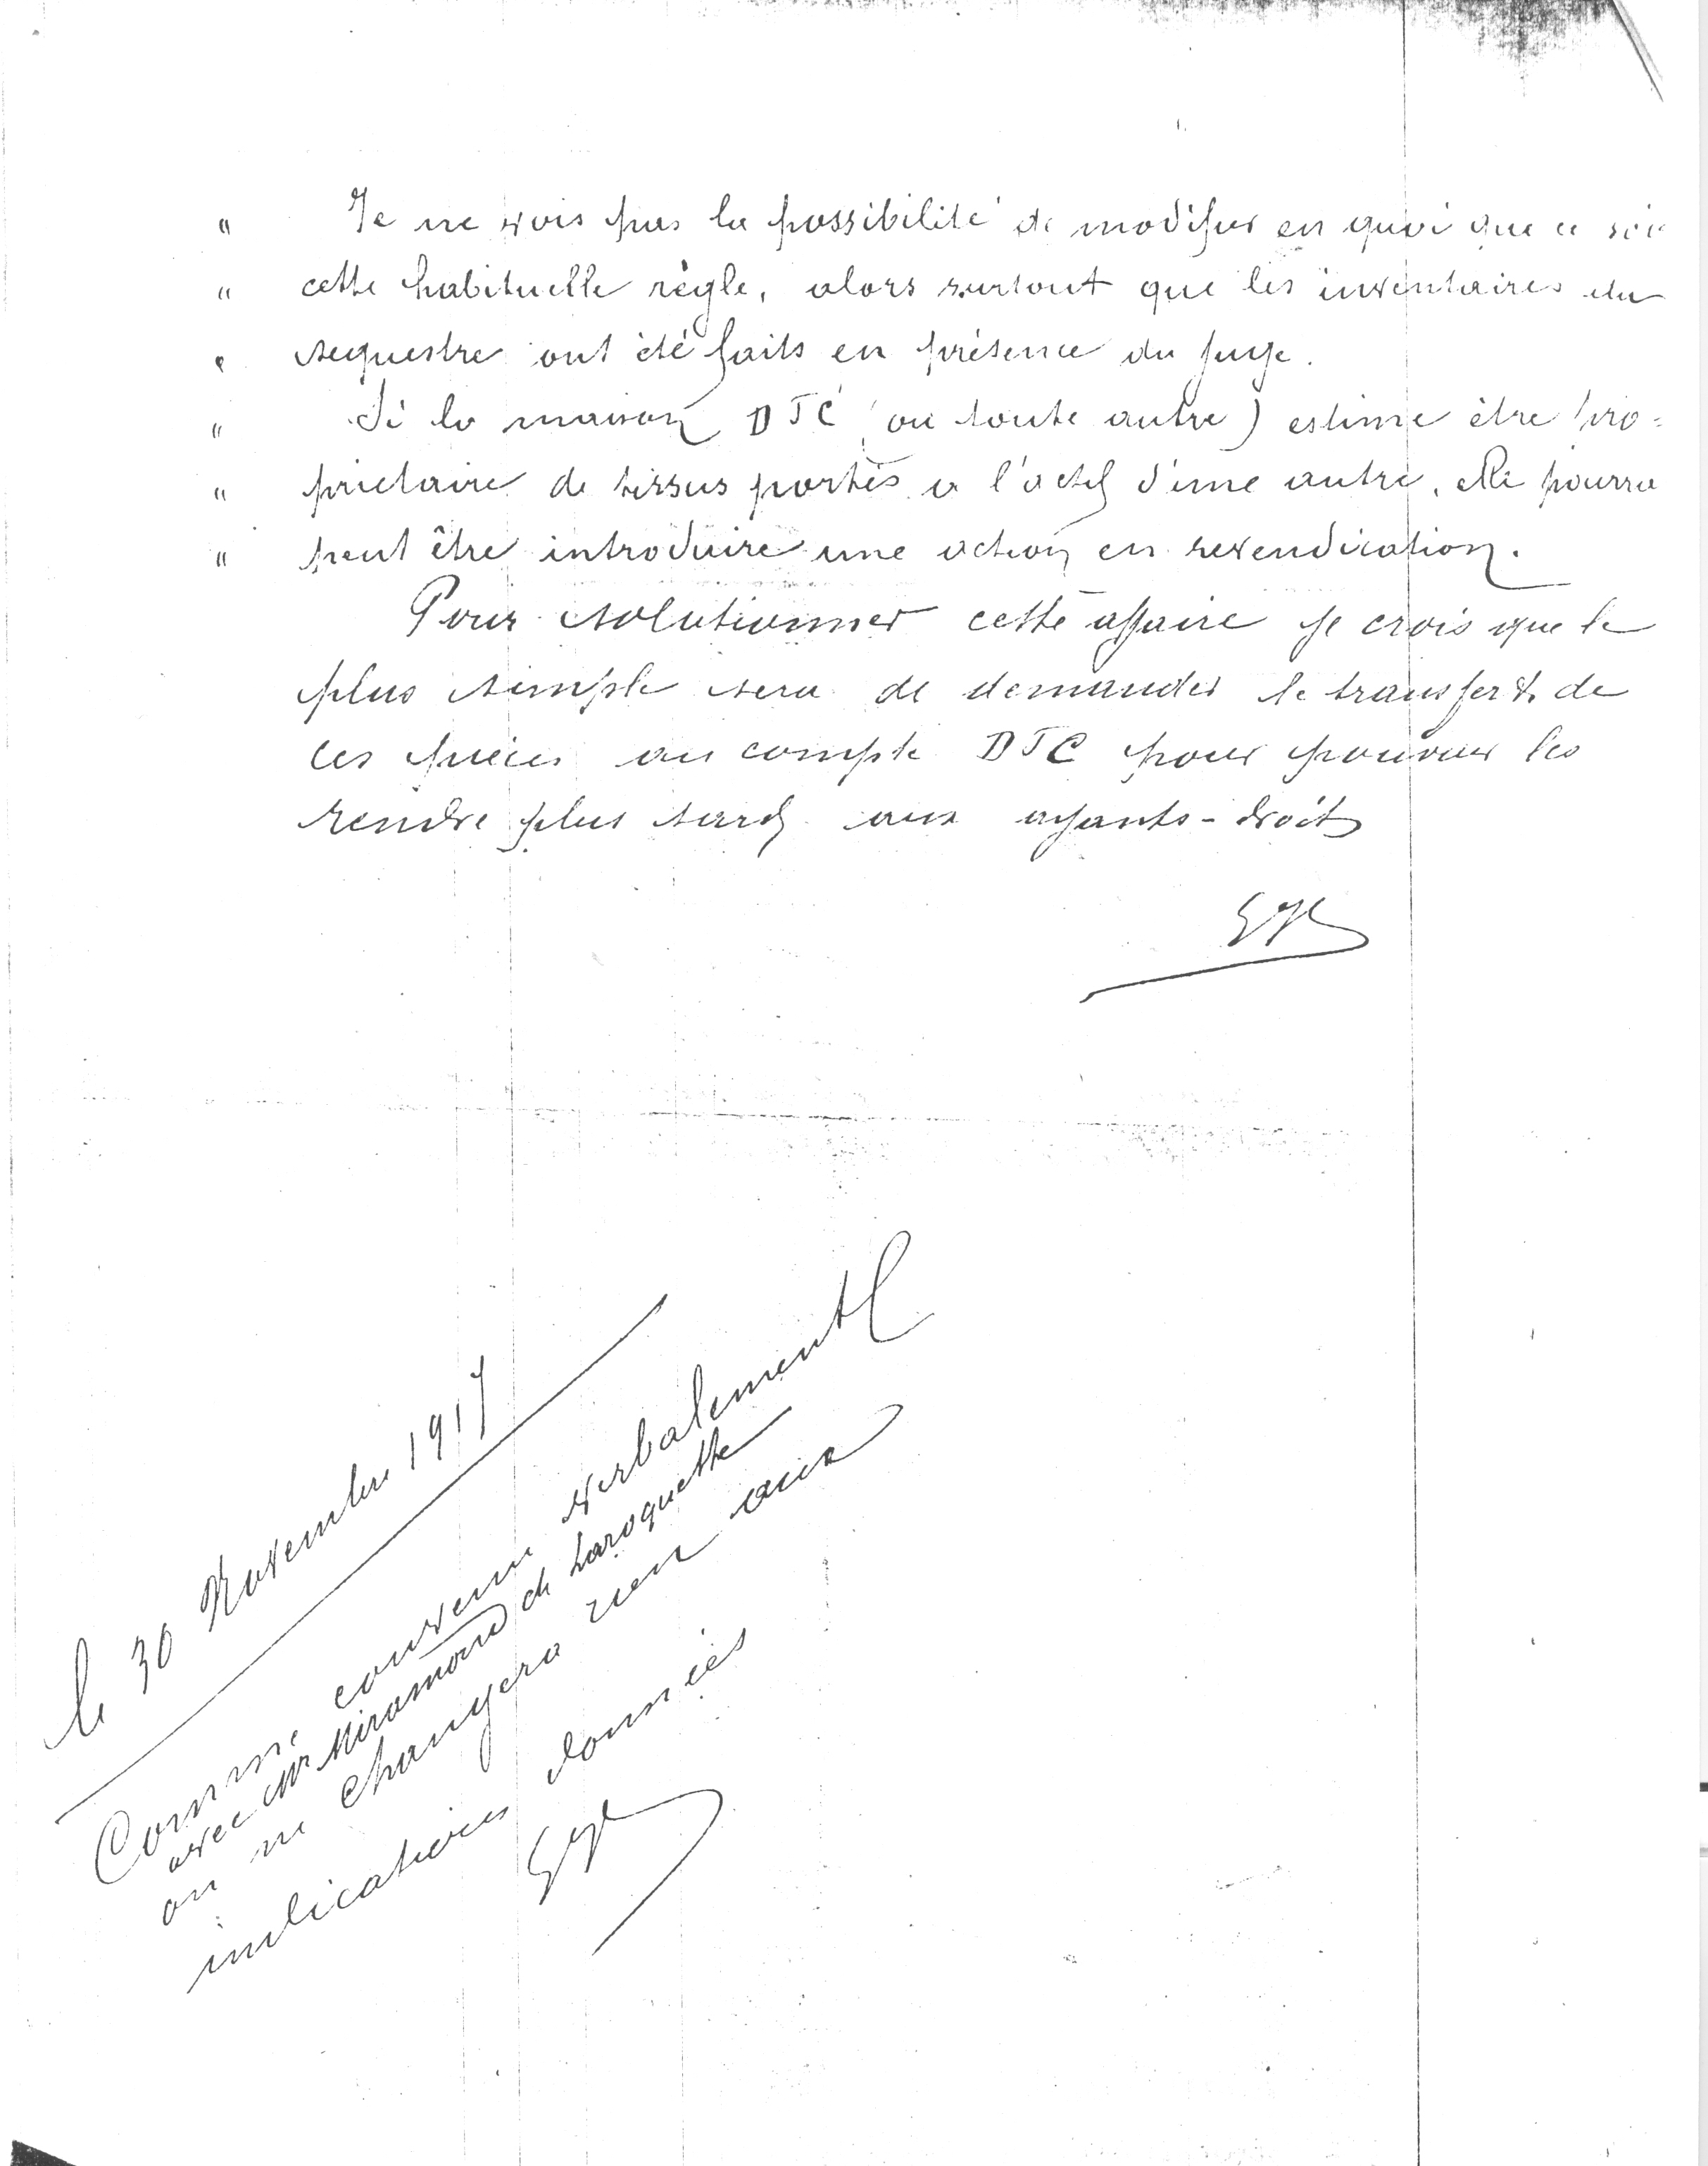 1917 – Rapport hebdomadaire de E. Hochstetter à Guy de Place, semaine du 22 au 27 Octobre 1917